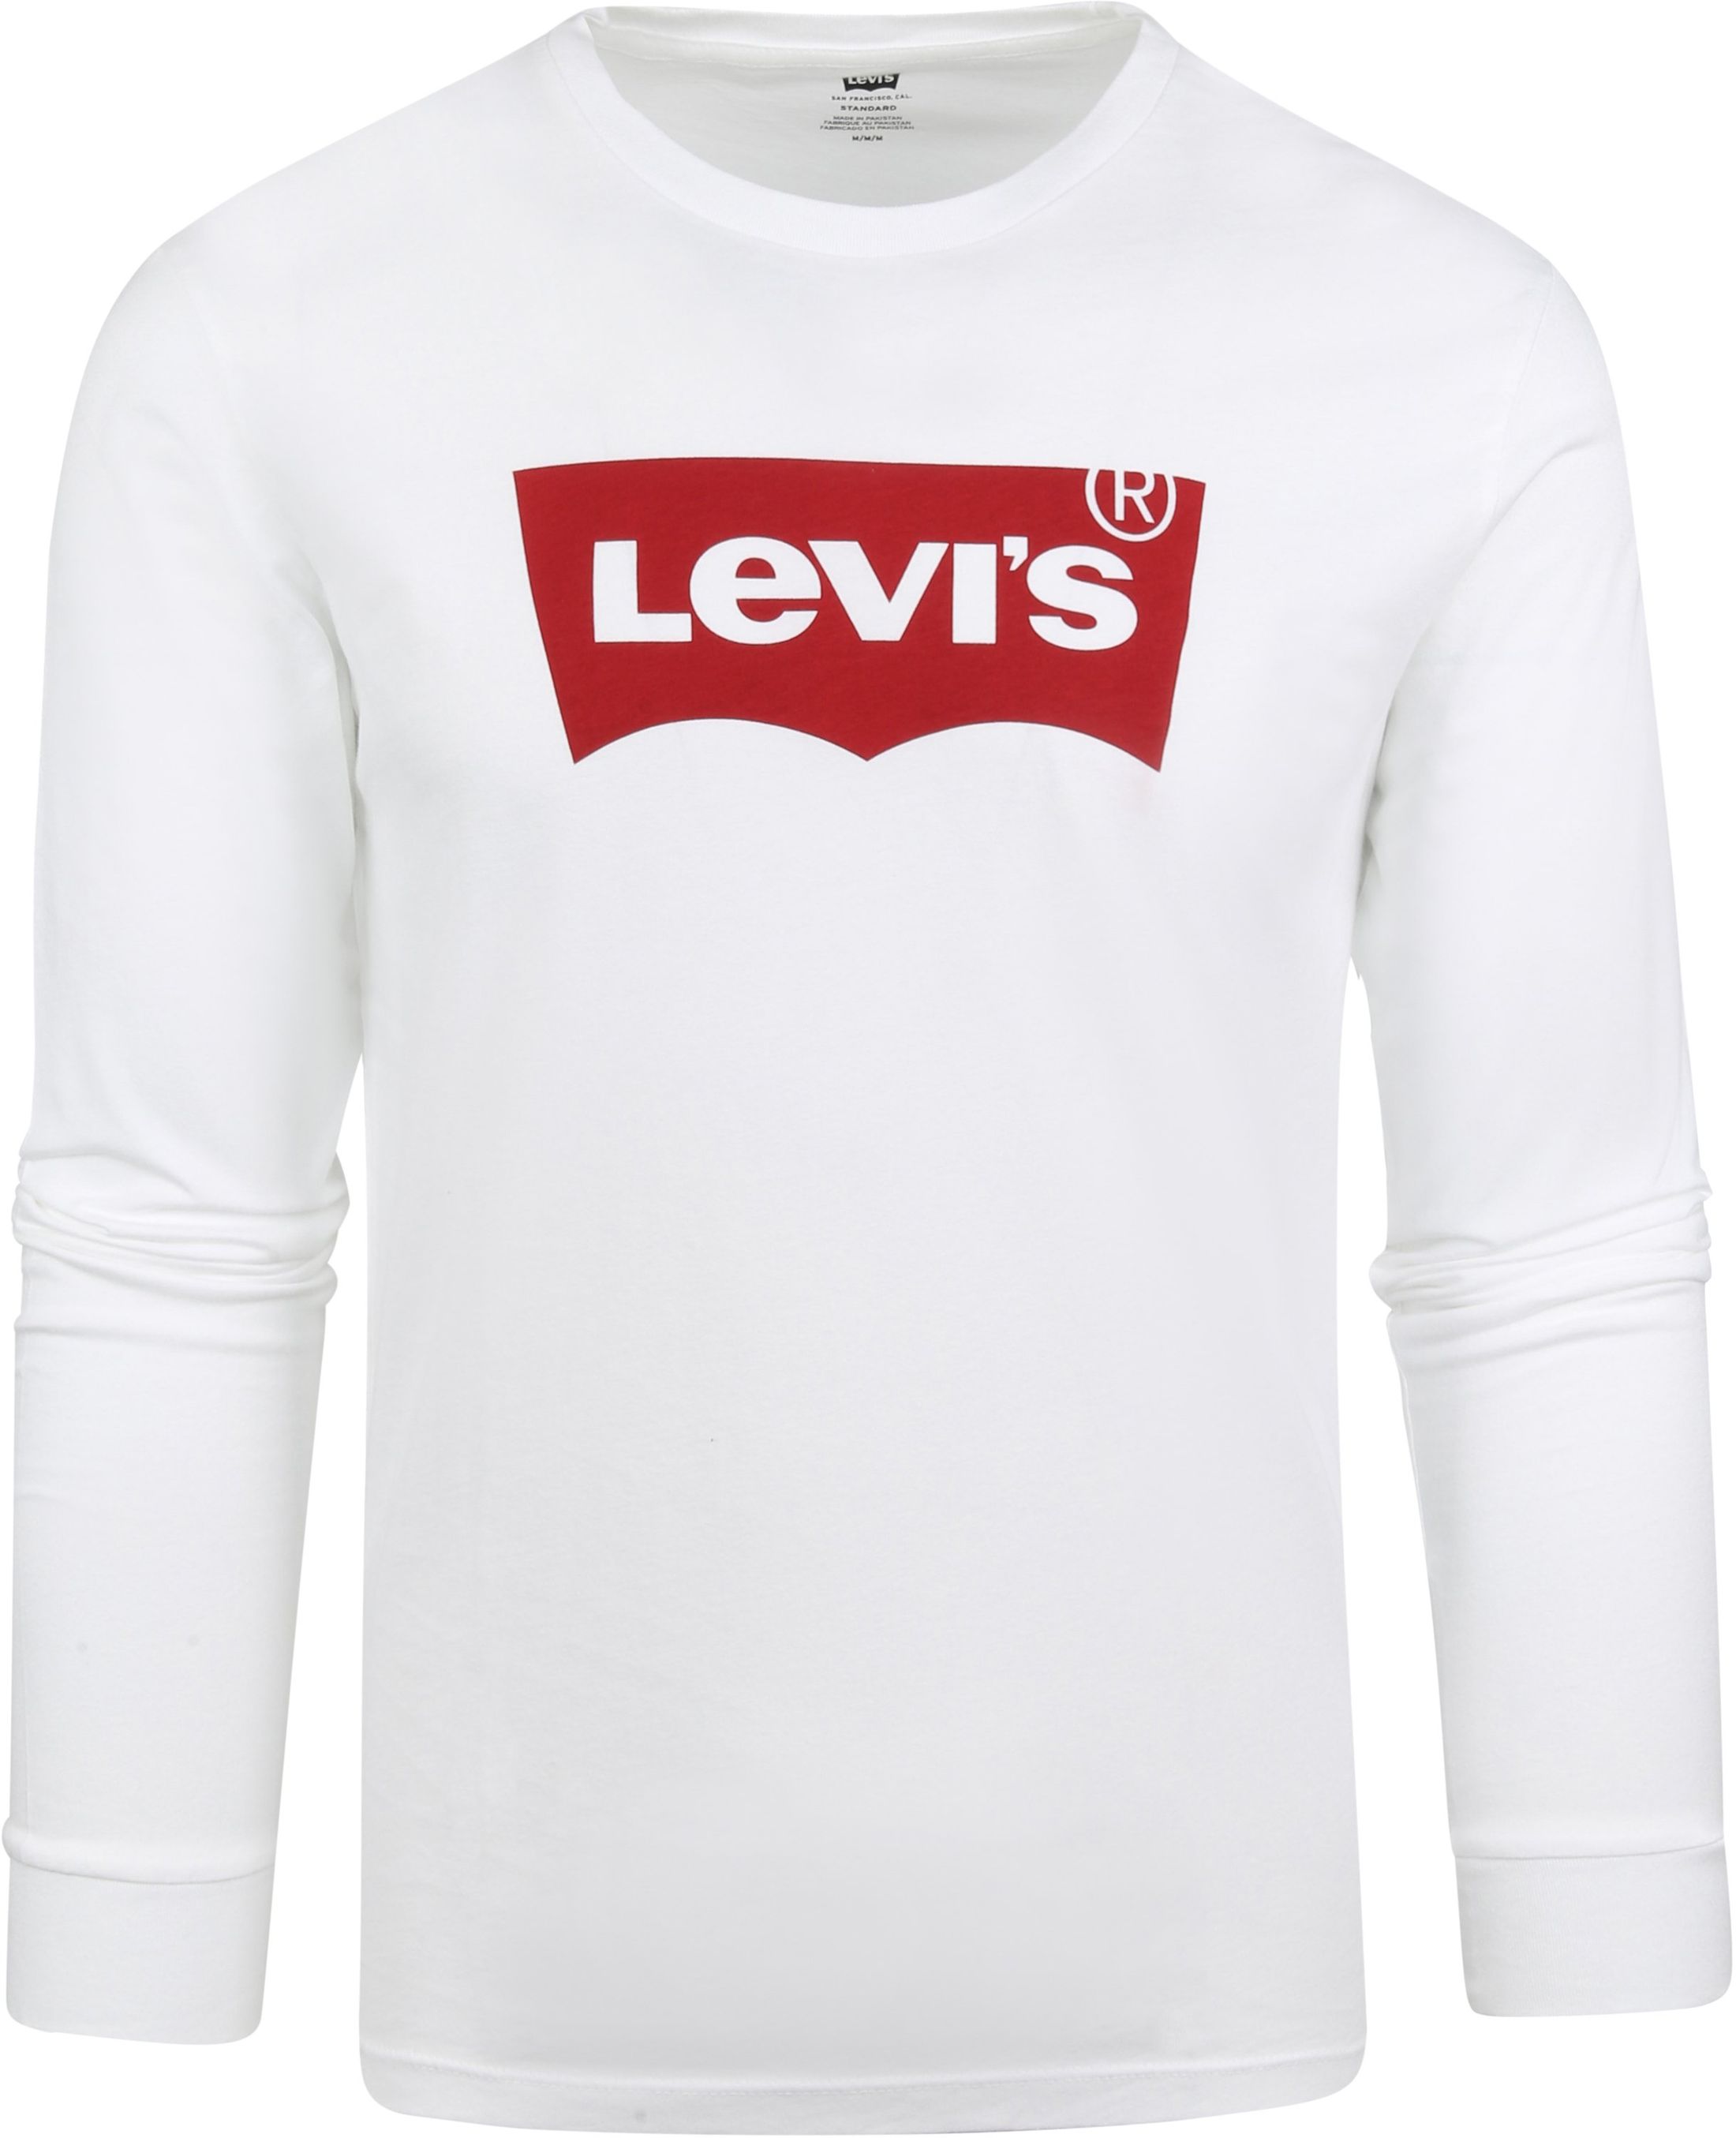 Levi's Original Longsleeve T-shirt White size L